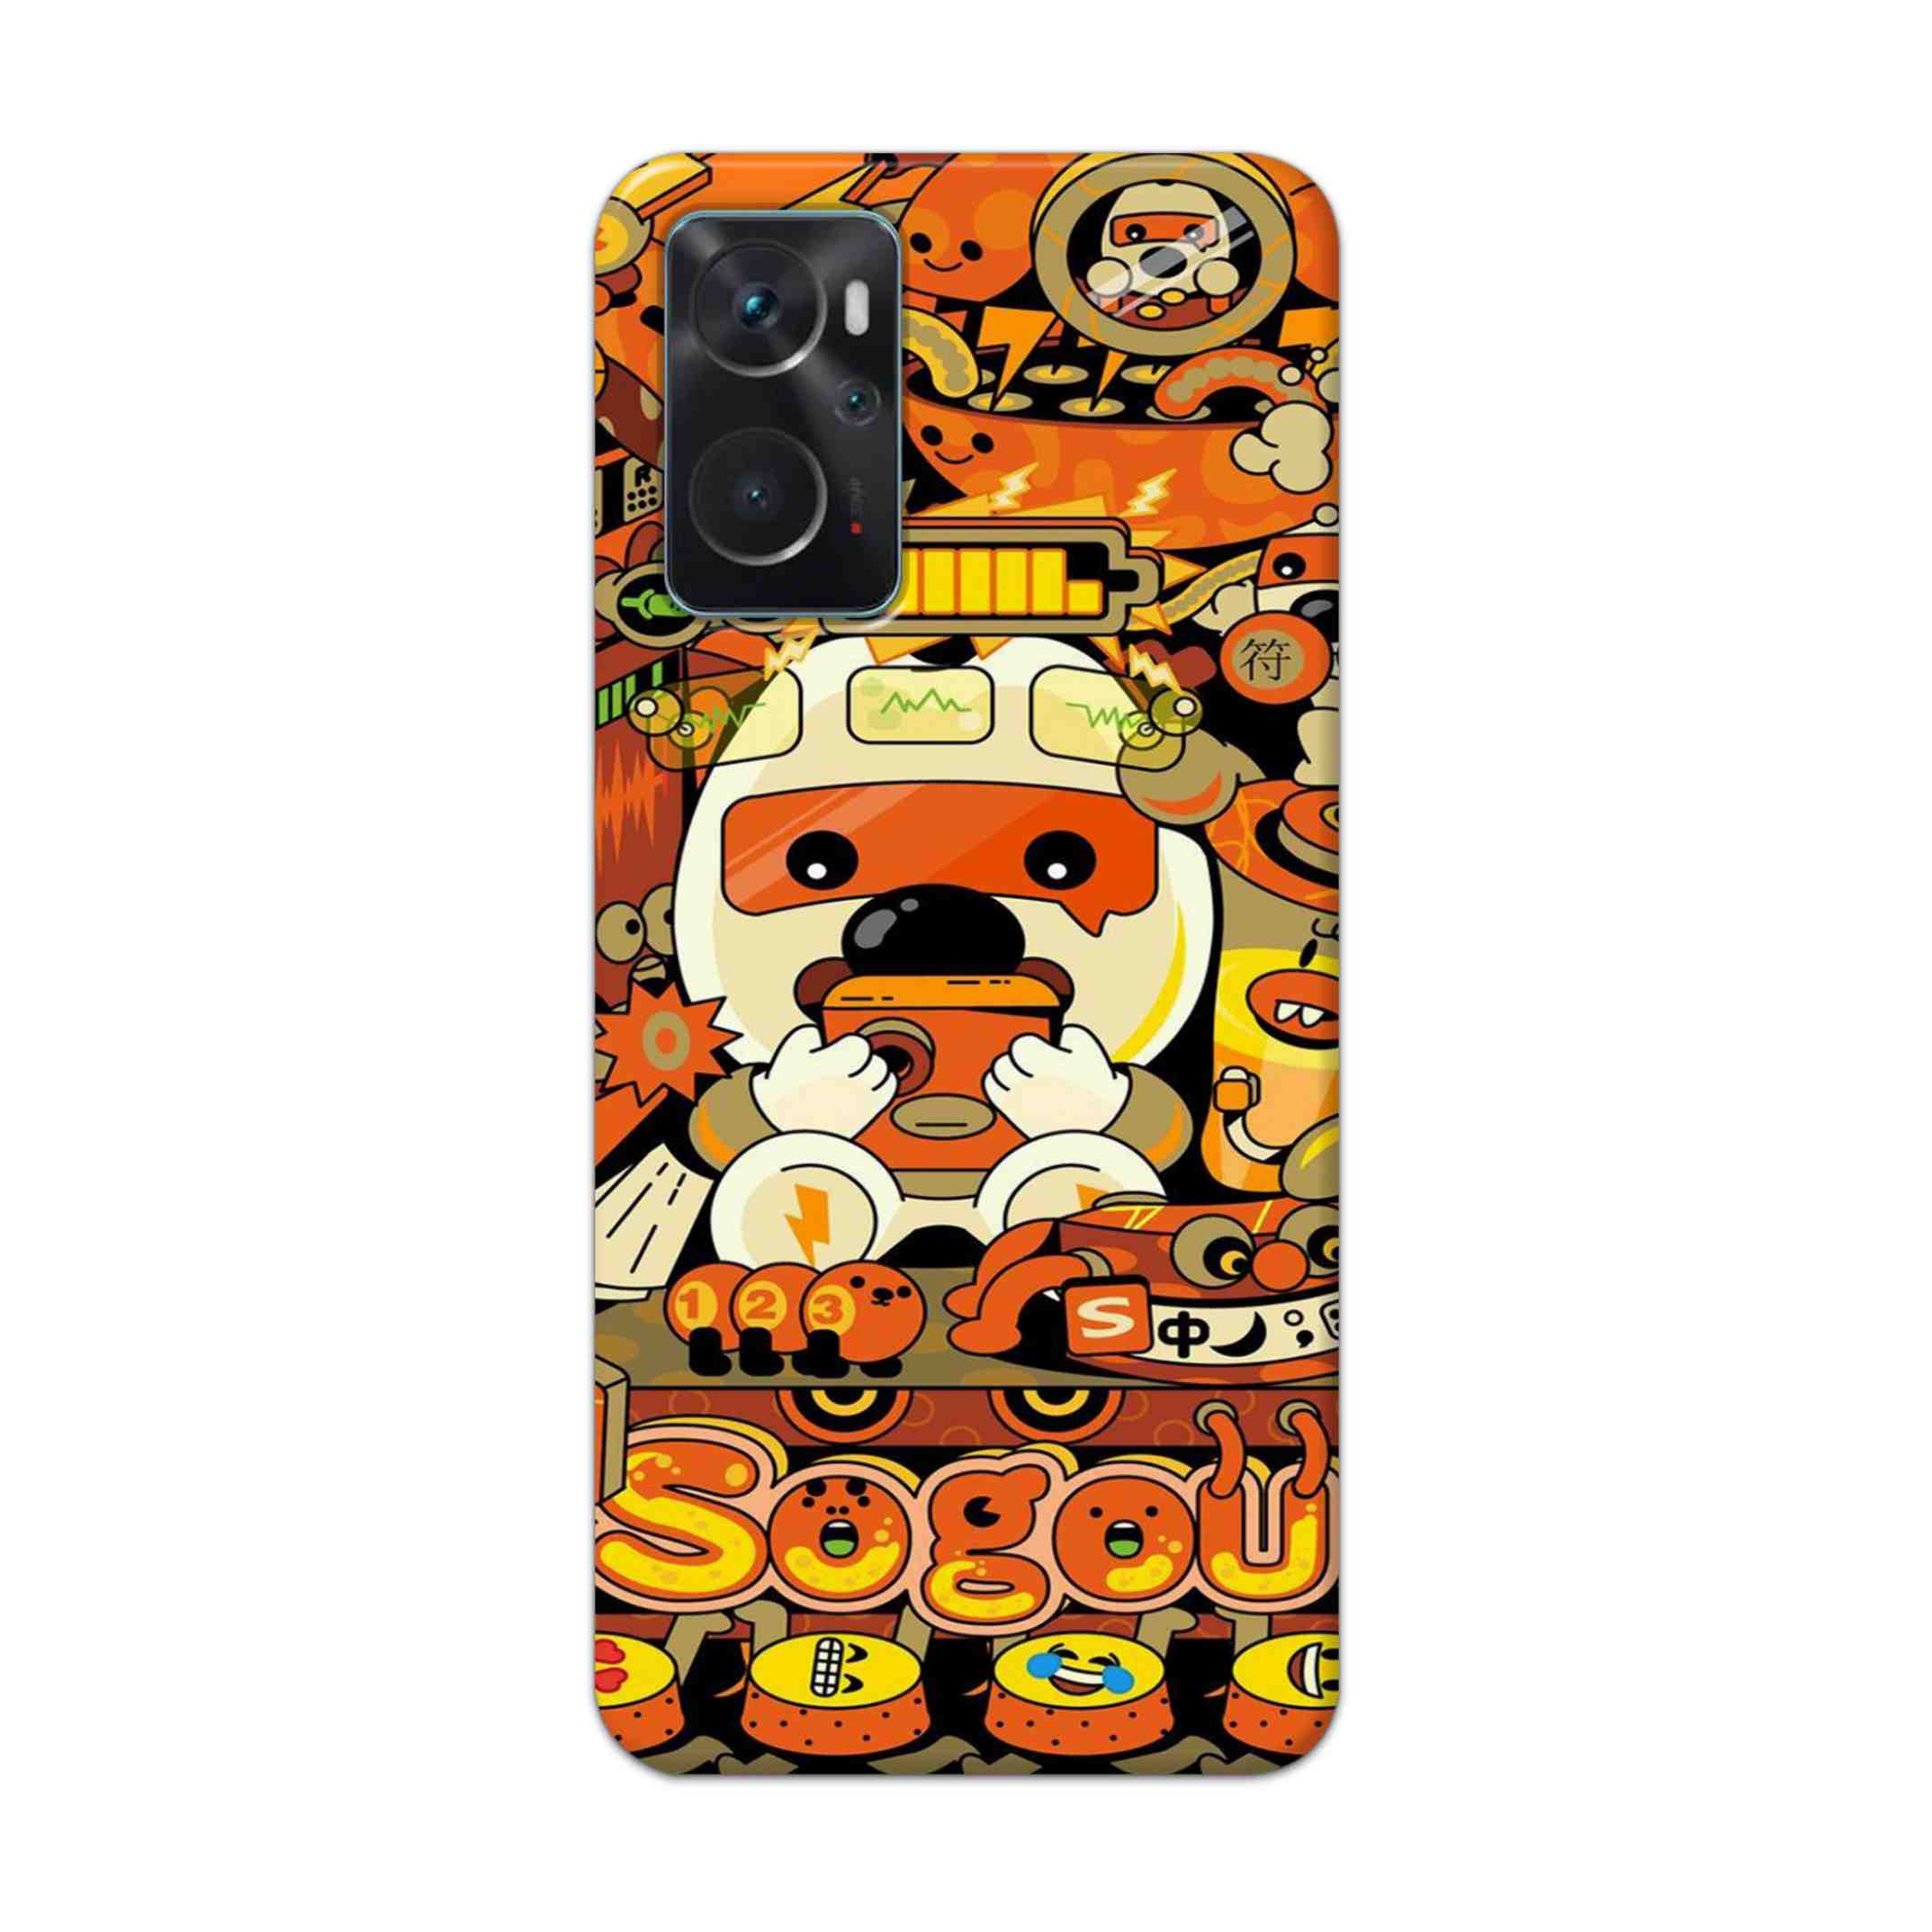 Buy Sogou Hard Back Mobile Phone Case Cover For Oppo K10 Online